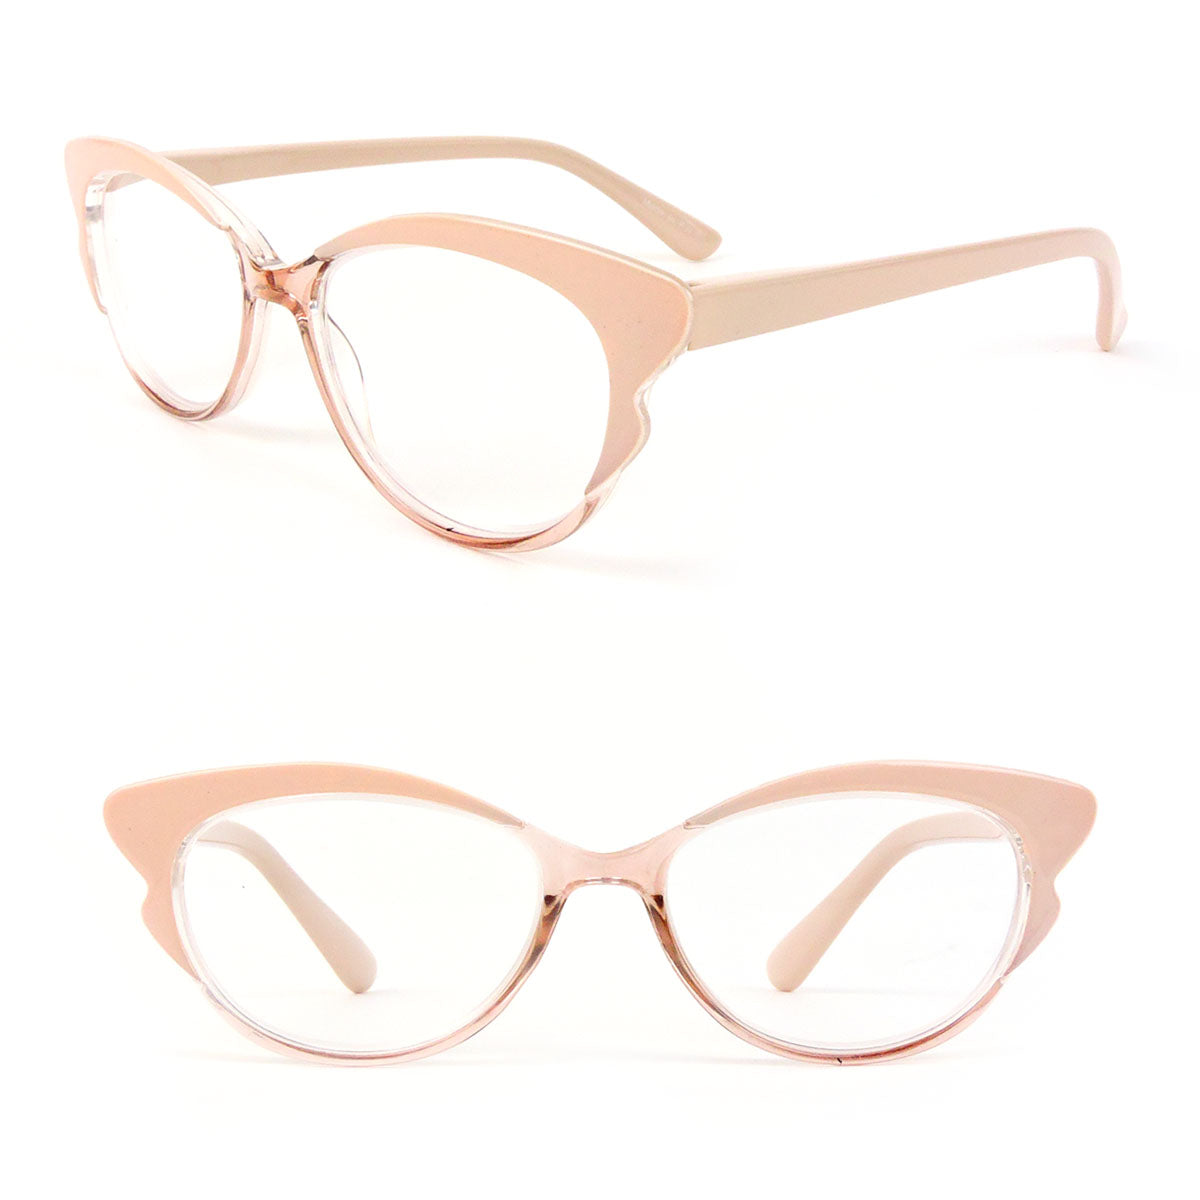 Cat Eye Frame Spring Hinges Fashion Women's Reading Glasses